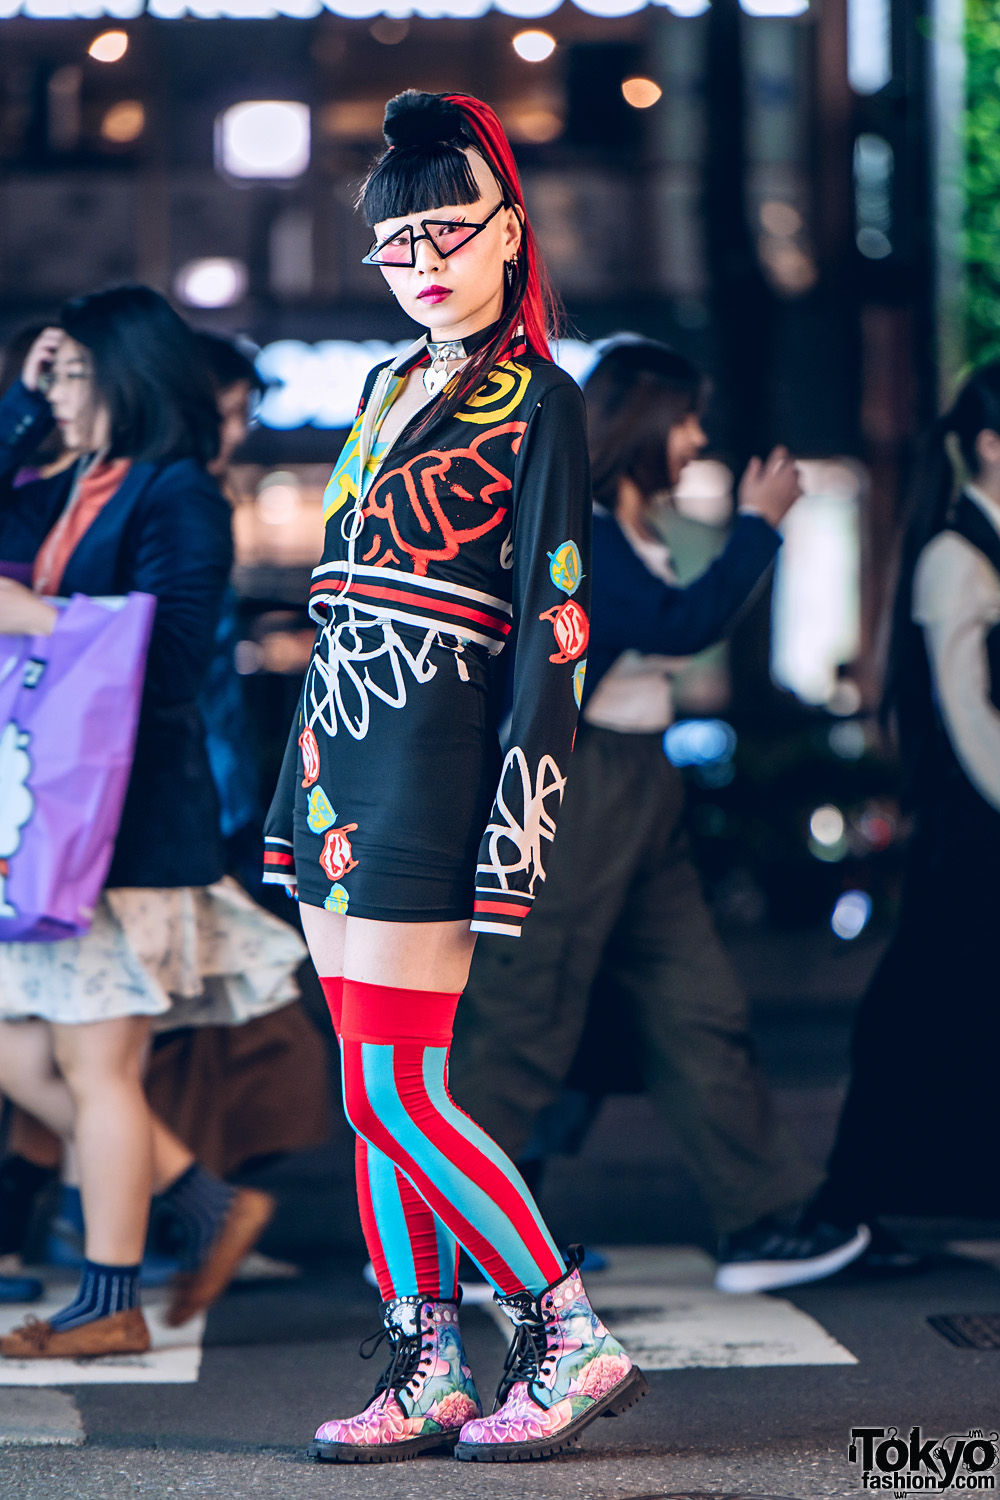 Neuron Nailz Tokyo Owner's Streetwear Style w/ Meek, Dolls Kill Mini Dress, Striped Thigh Socks, Floral Print Boots, Triangle Glasses & Heart Choker